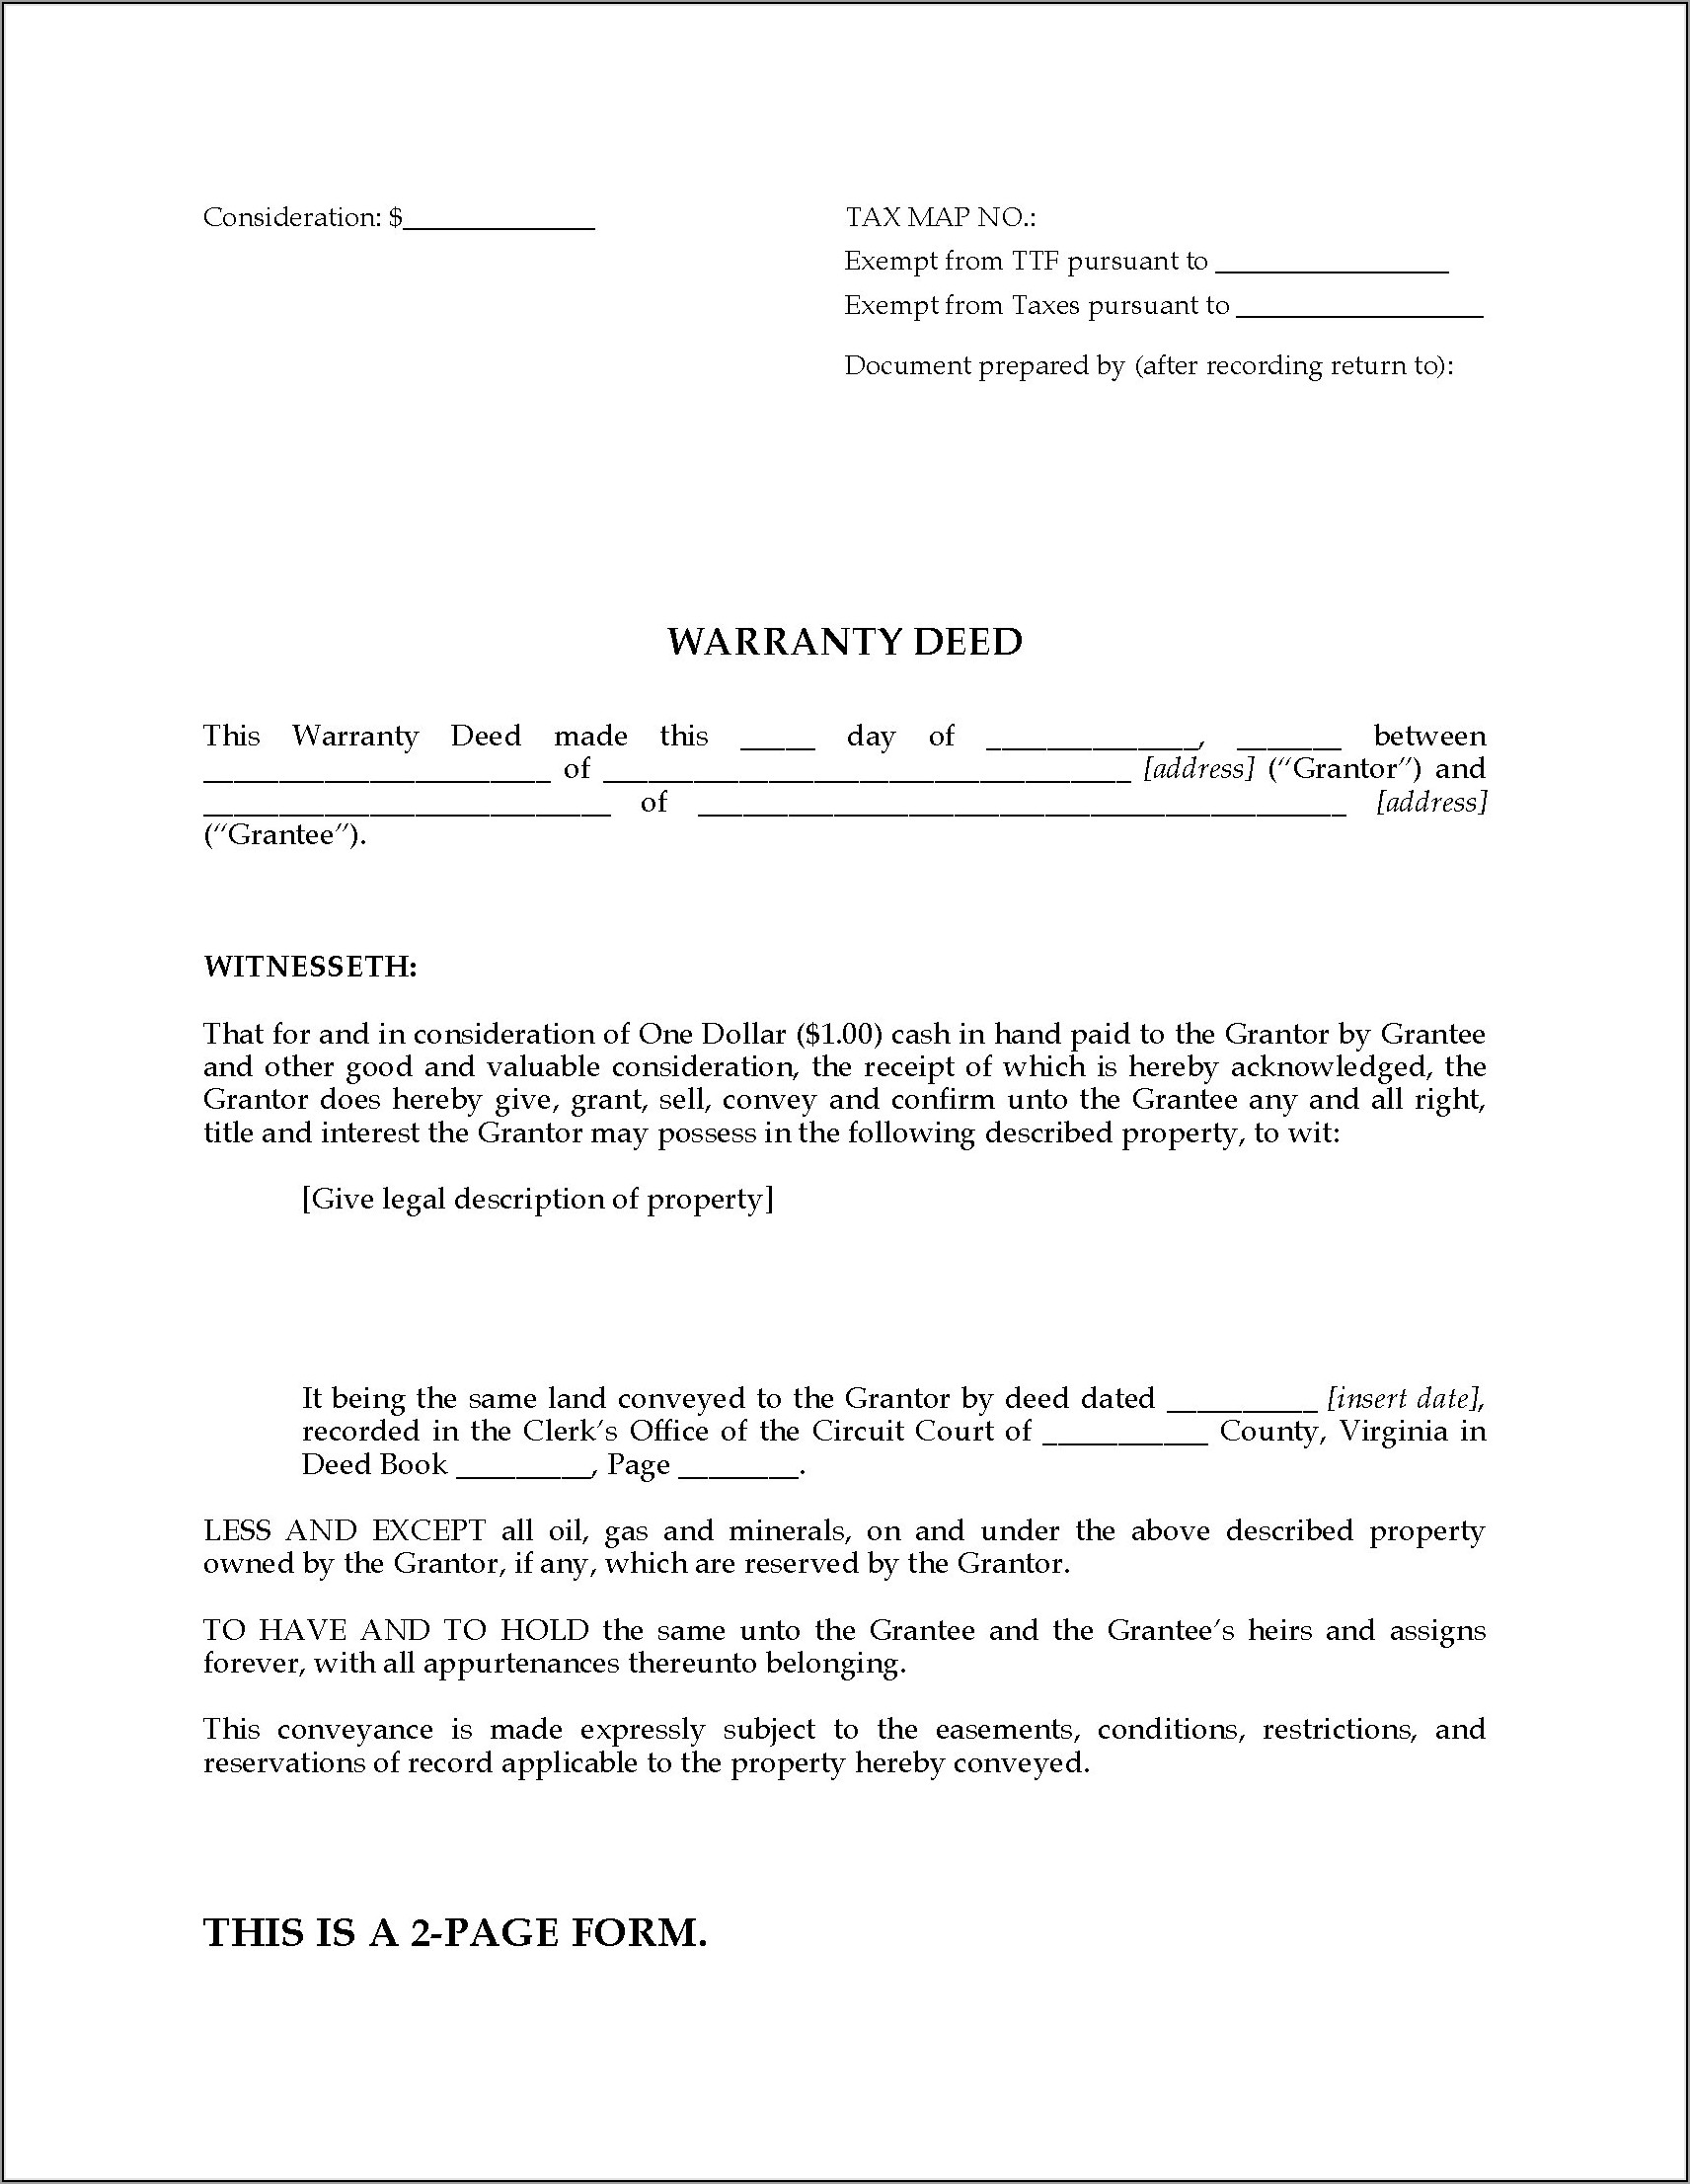 Virginia Warranty Deed Form